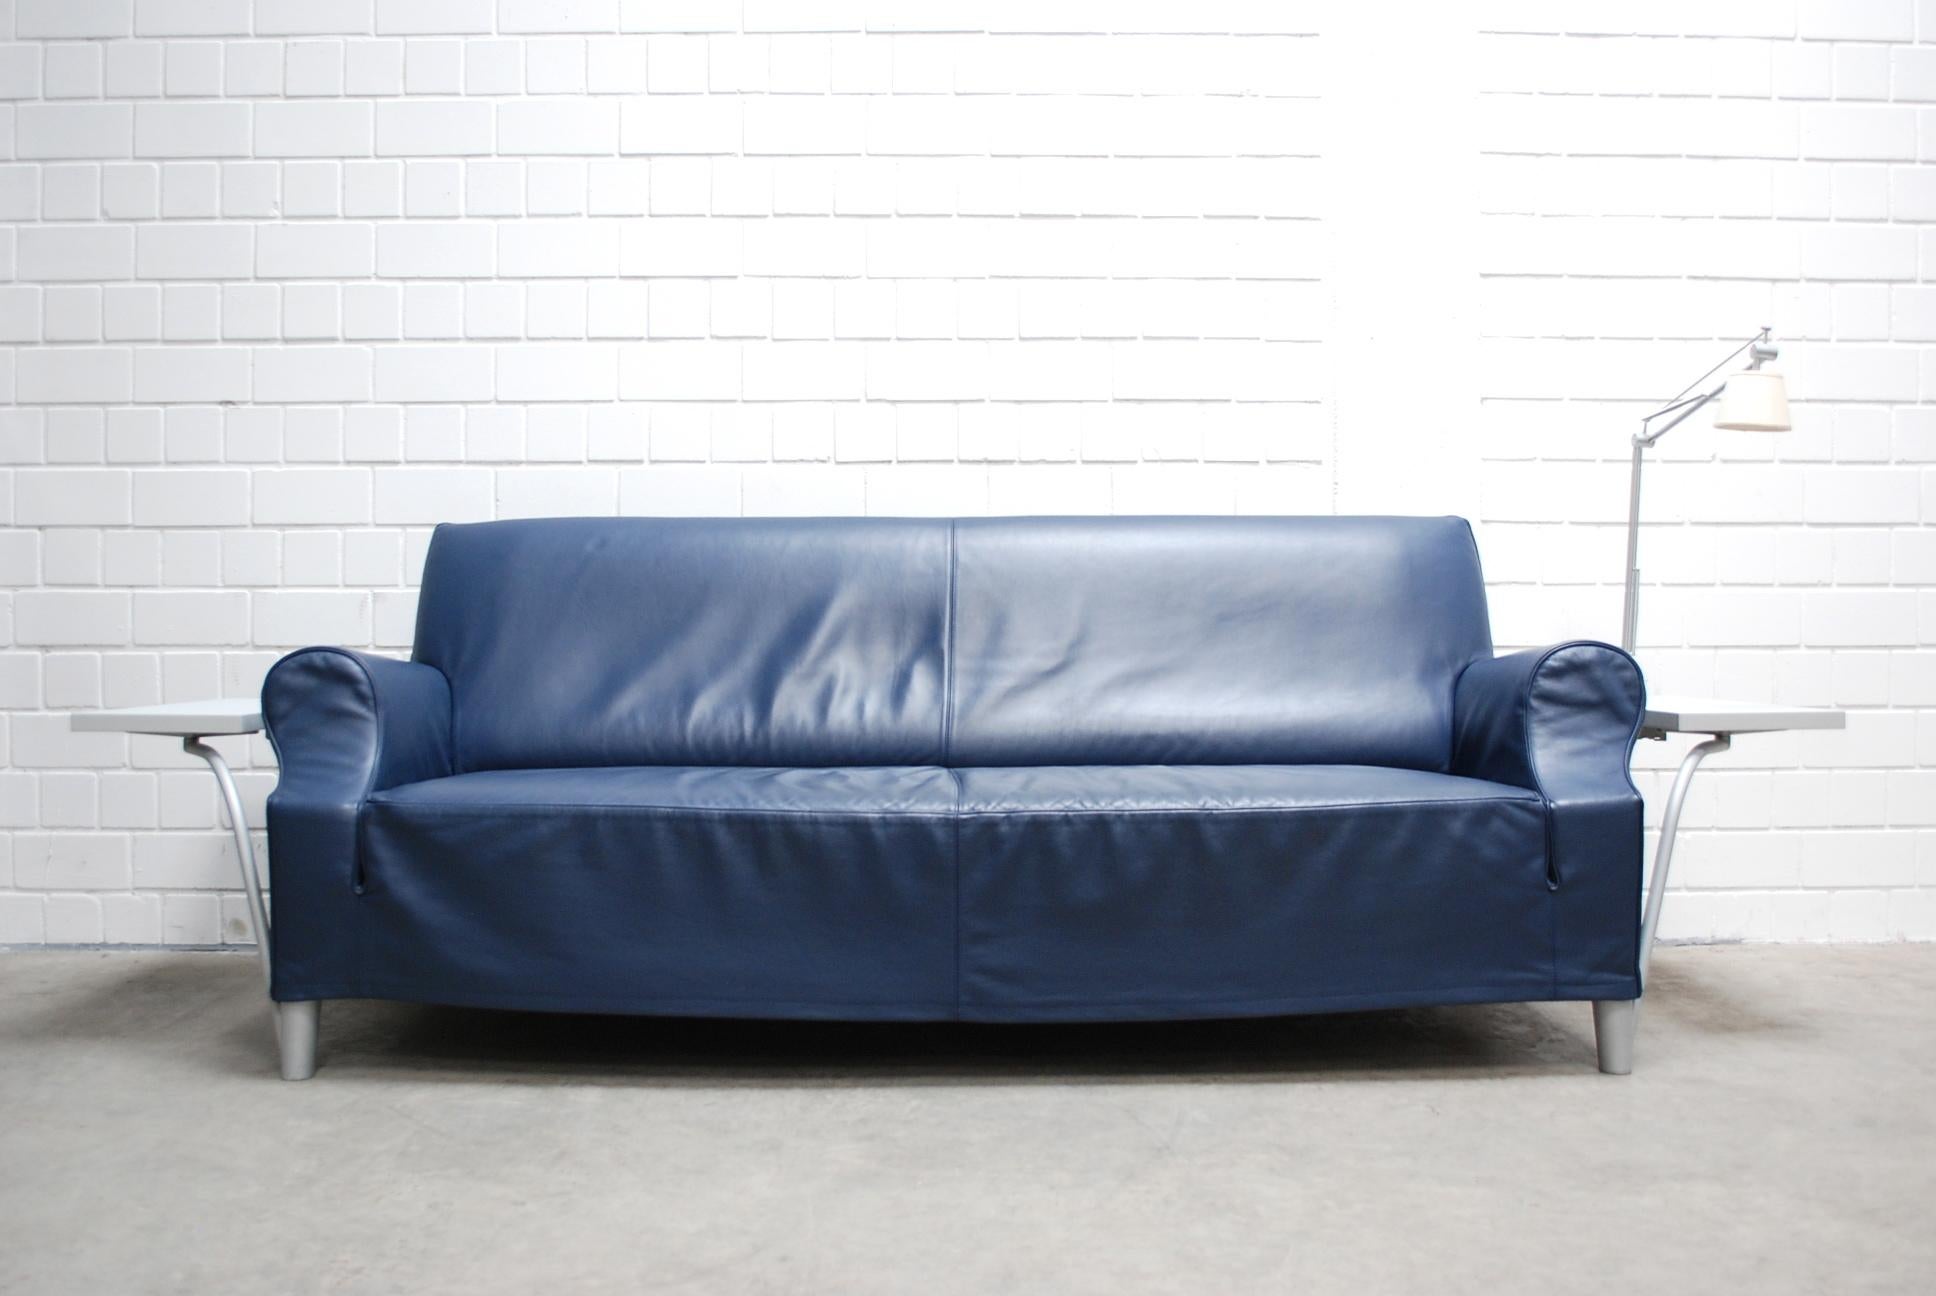 Philippe Starck a conçu ce modèle de canapé-lit.
Canapé en cuir bleu comprenant une lampe Flos Archimoon. La lampe est amovible.
Il y a des étagères à côté de chaque accoudoir.
Pieds en aluminium.
